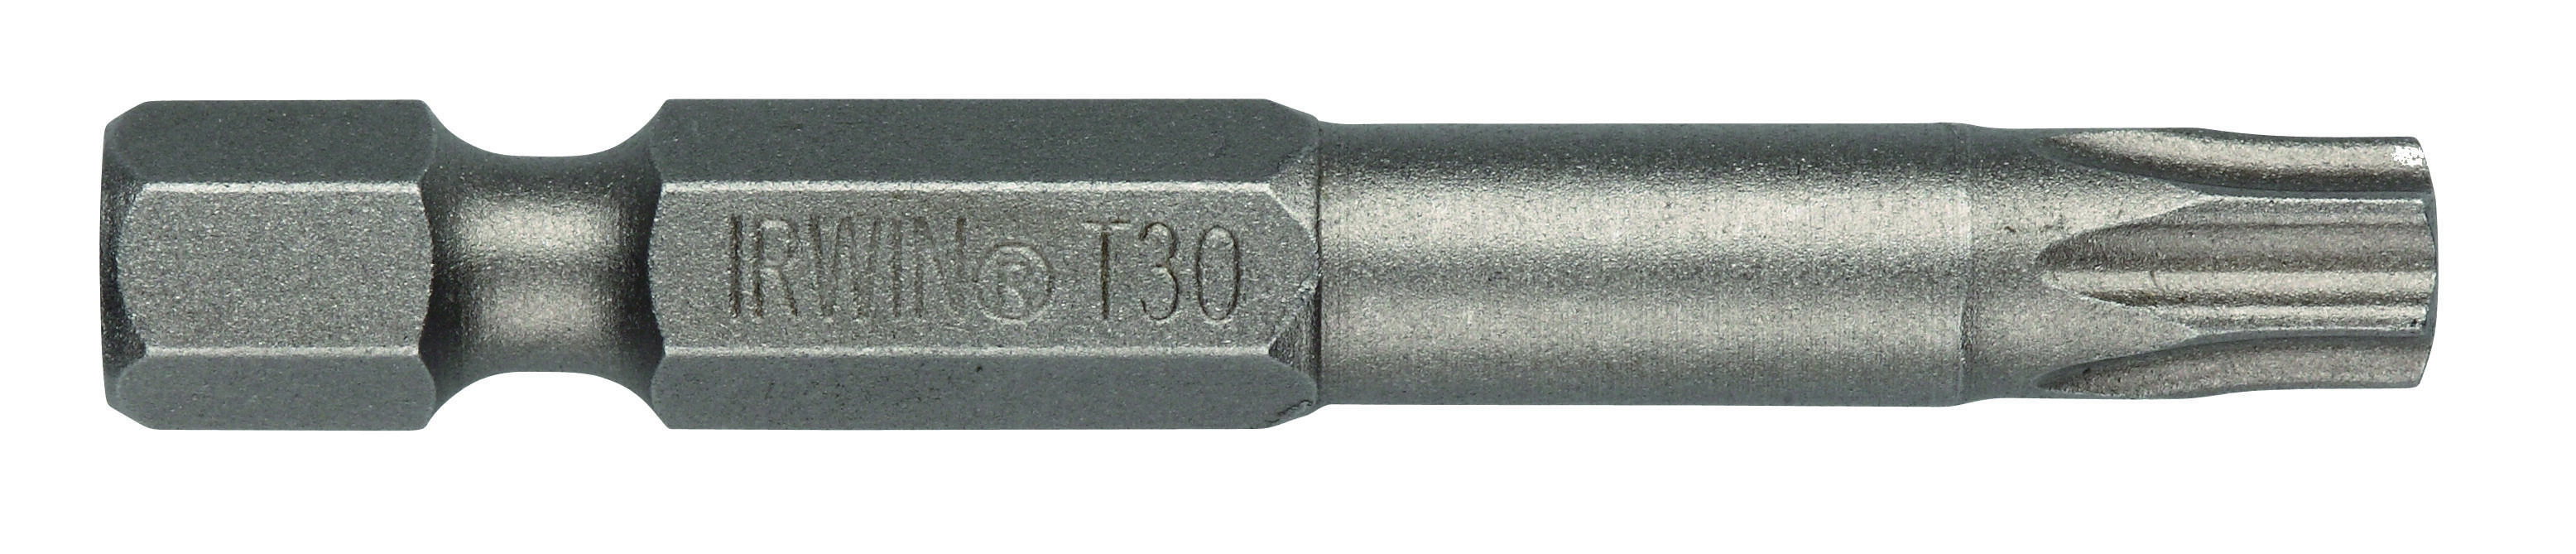 bit nástavec TORX 30  50mm (5ks)  IRWIN 0.1 Kg MAXMIX Sklad14 671153 11